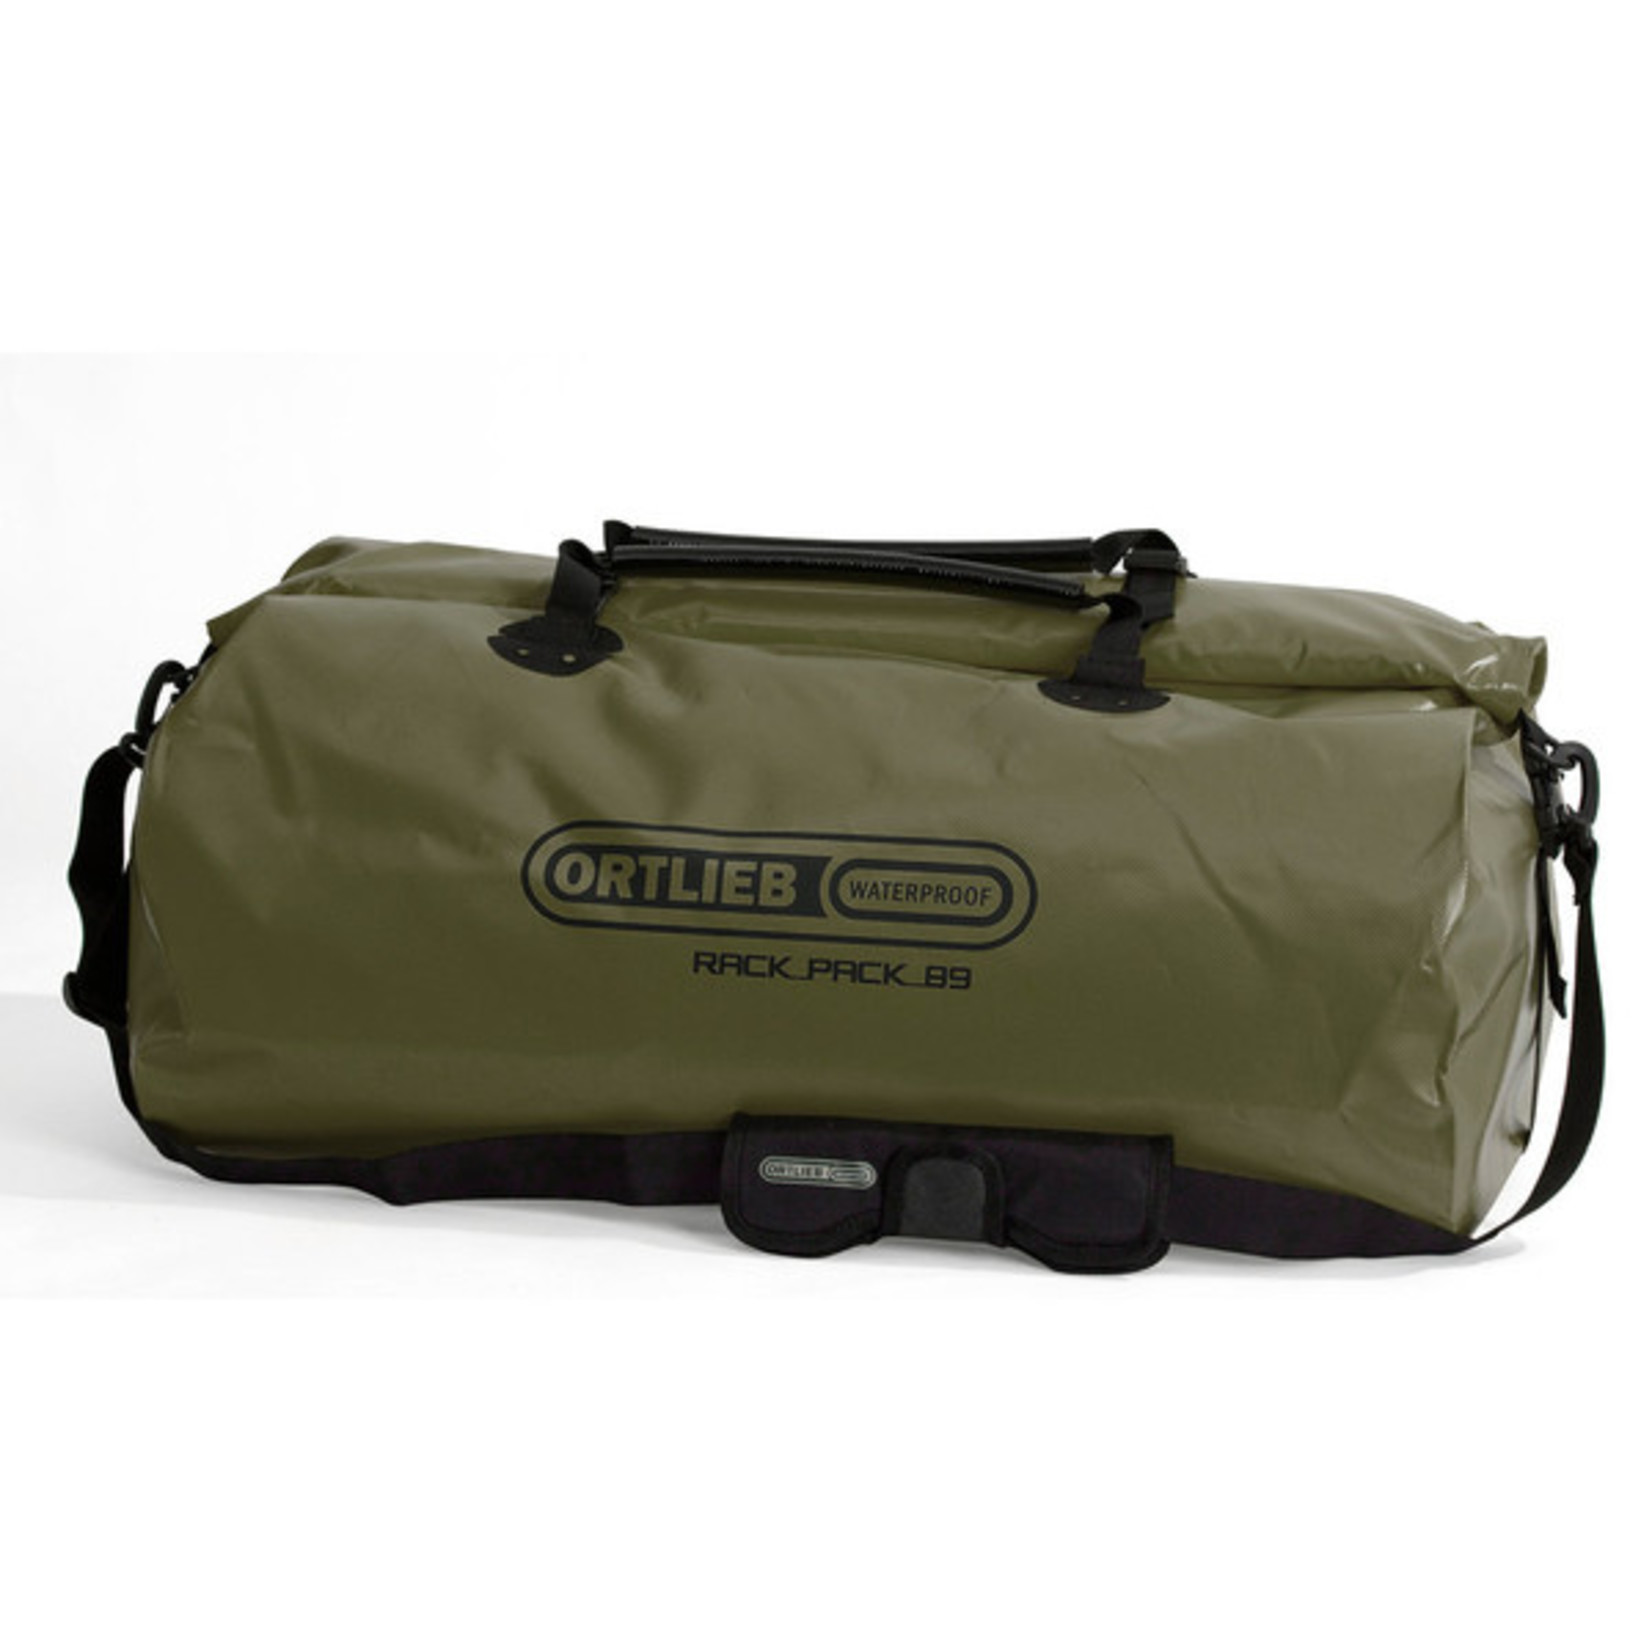 Ortlieb New Ortlieb Rack-Pack Bag K64H6 - 89L - Olive